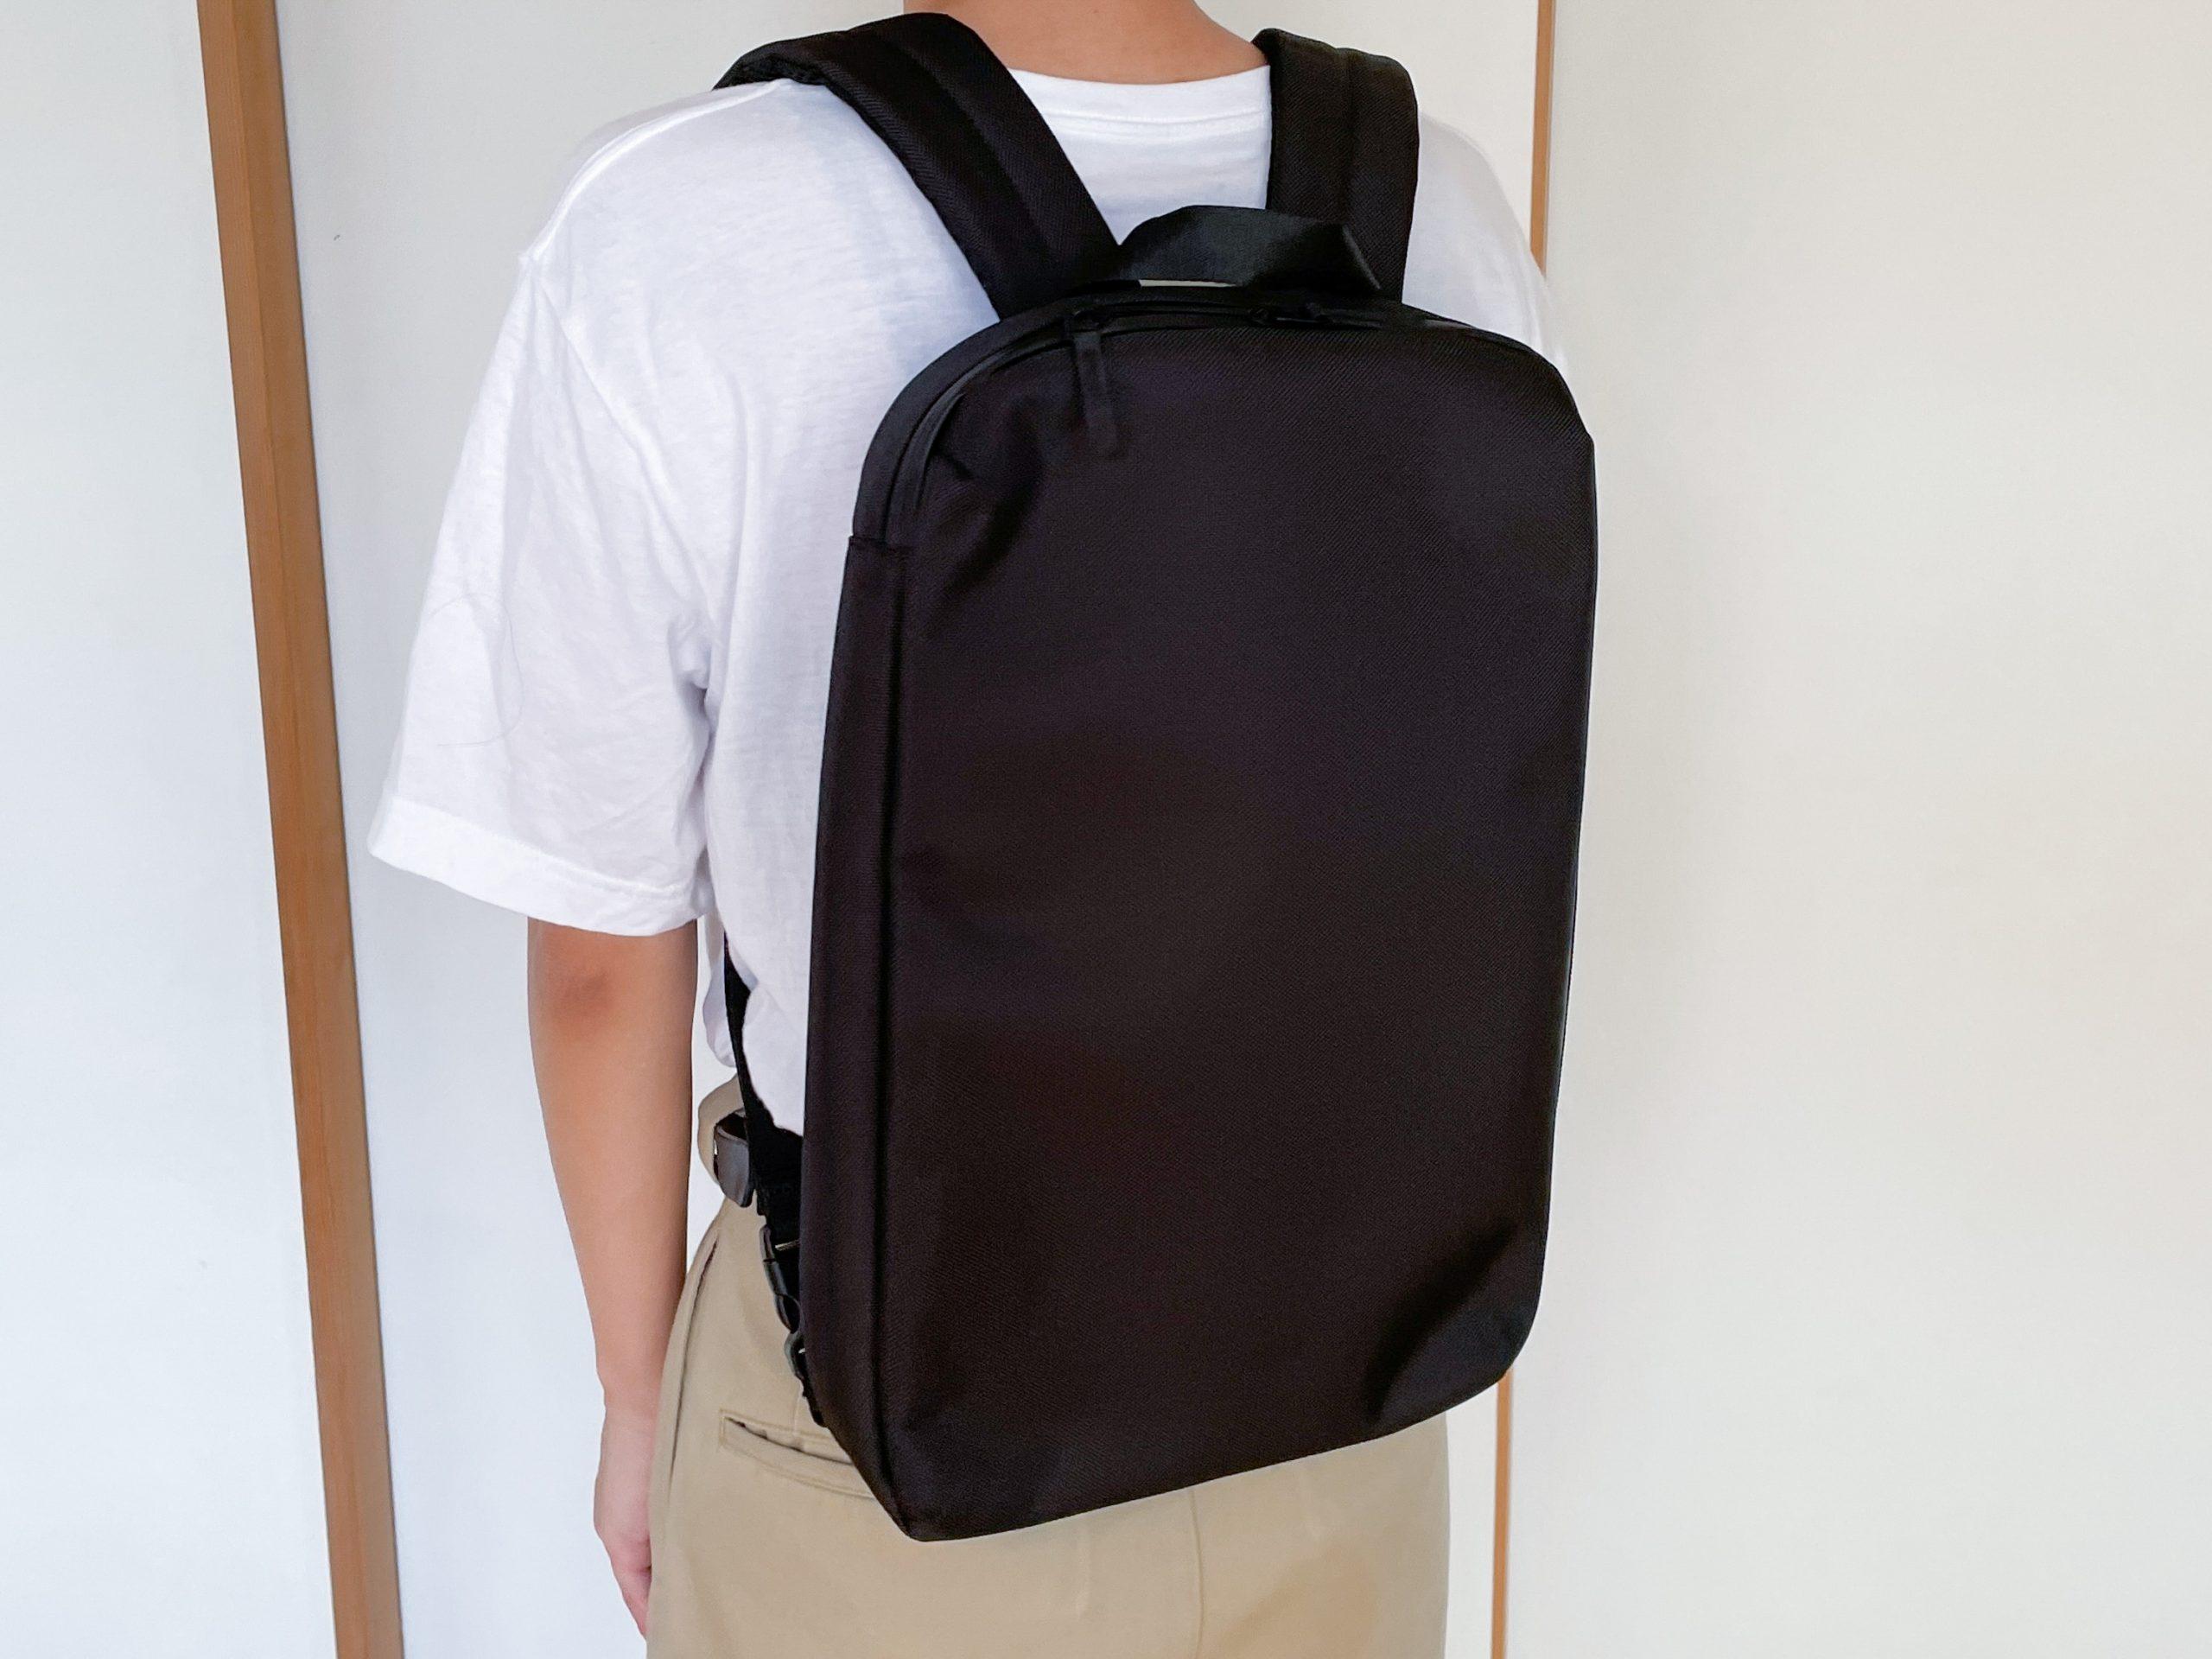 ユニクロの3WAYバッグ、「PCを持ち運びたいけど大きなバッグはいらない